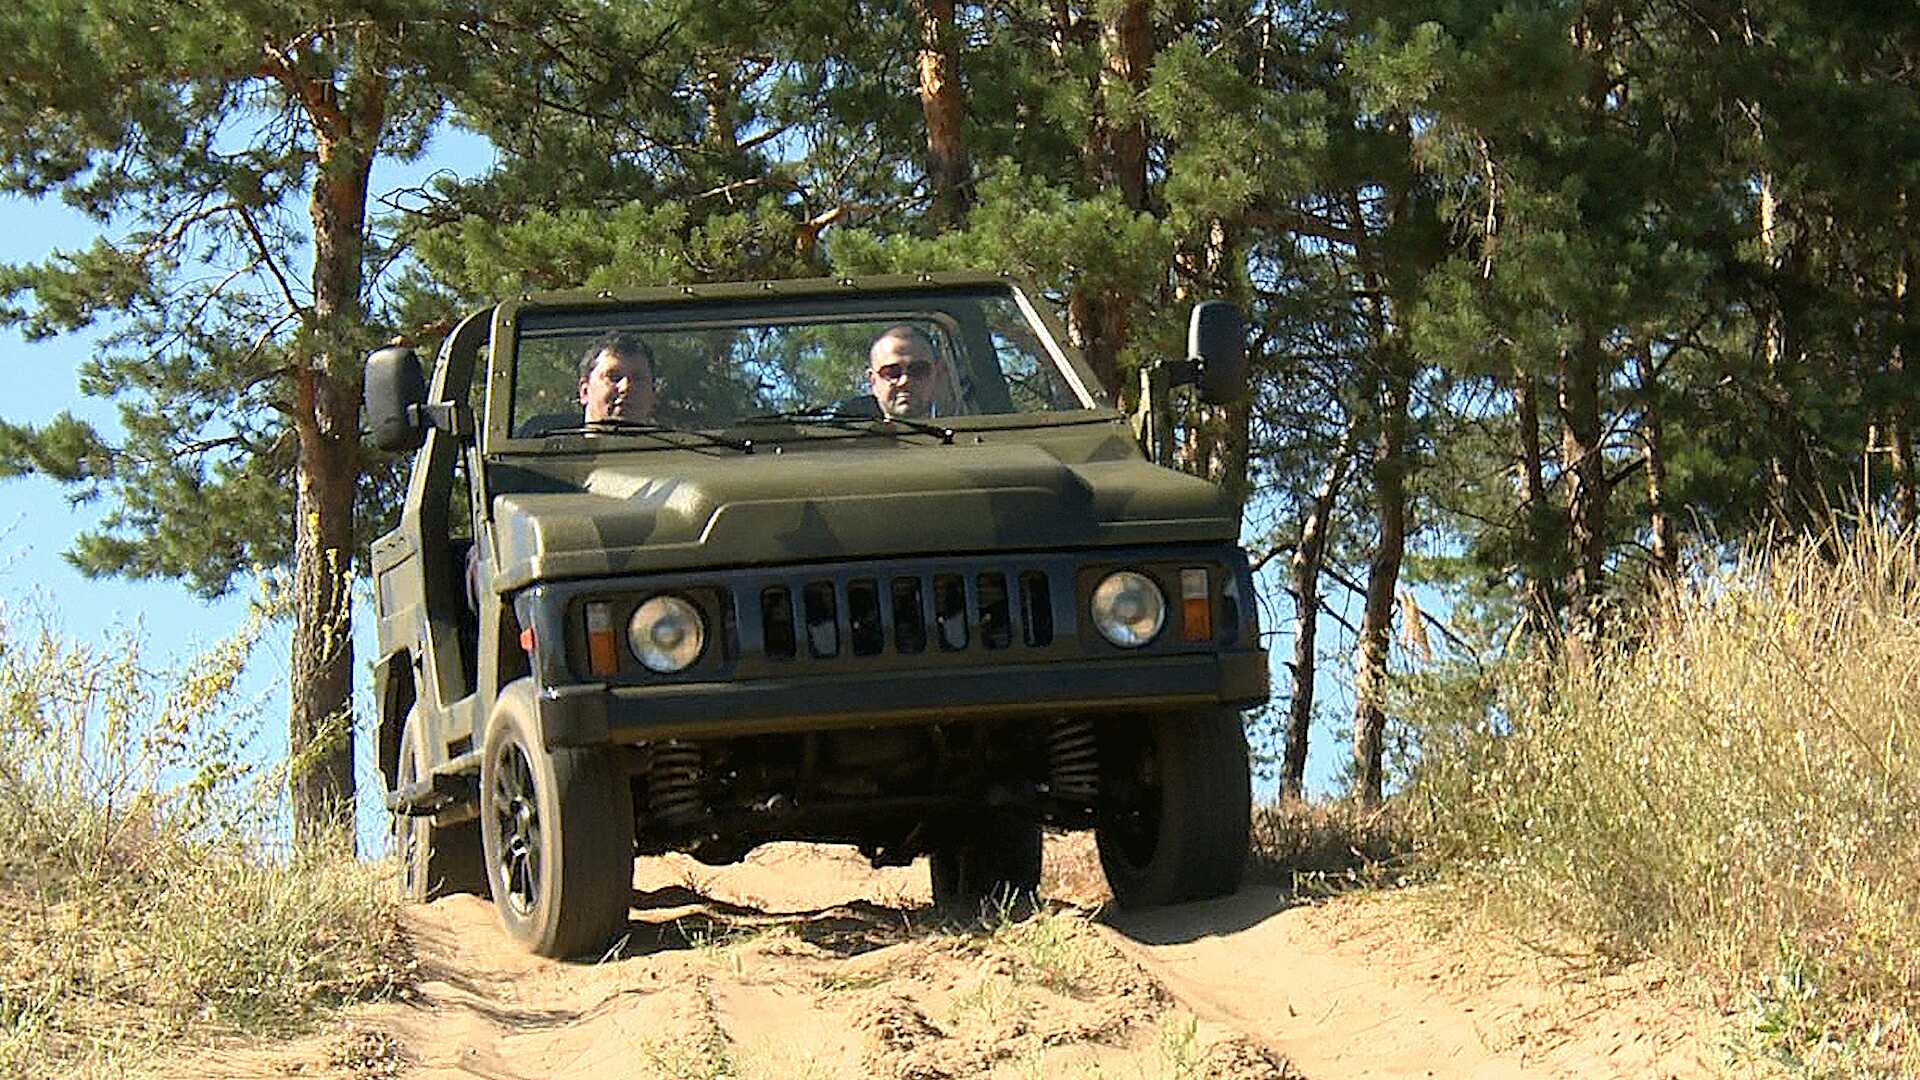 Mobil ini diadopsi dari LADA Niva, mobil off-road (medan berat) ikonik Rusia. Sumber: Universitas Negeri Togliatti